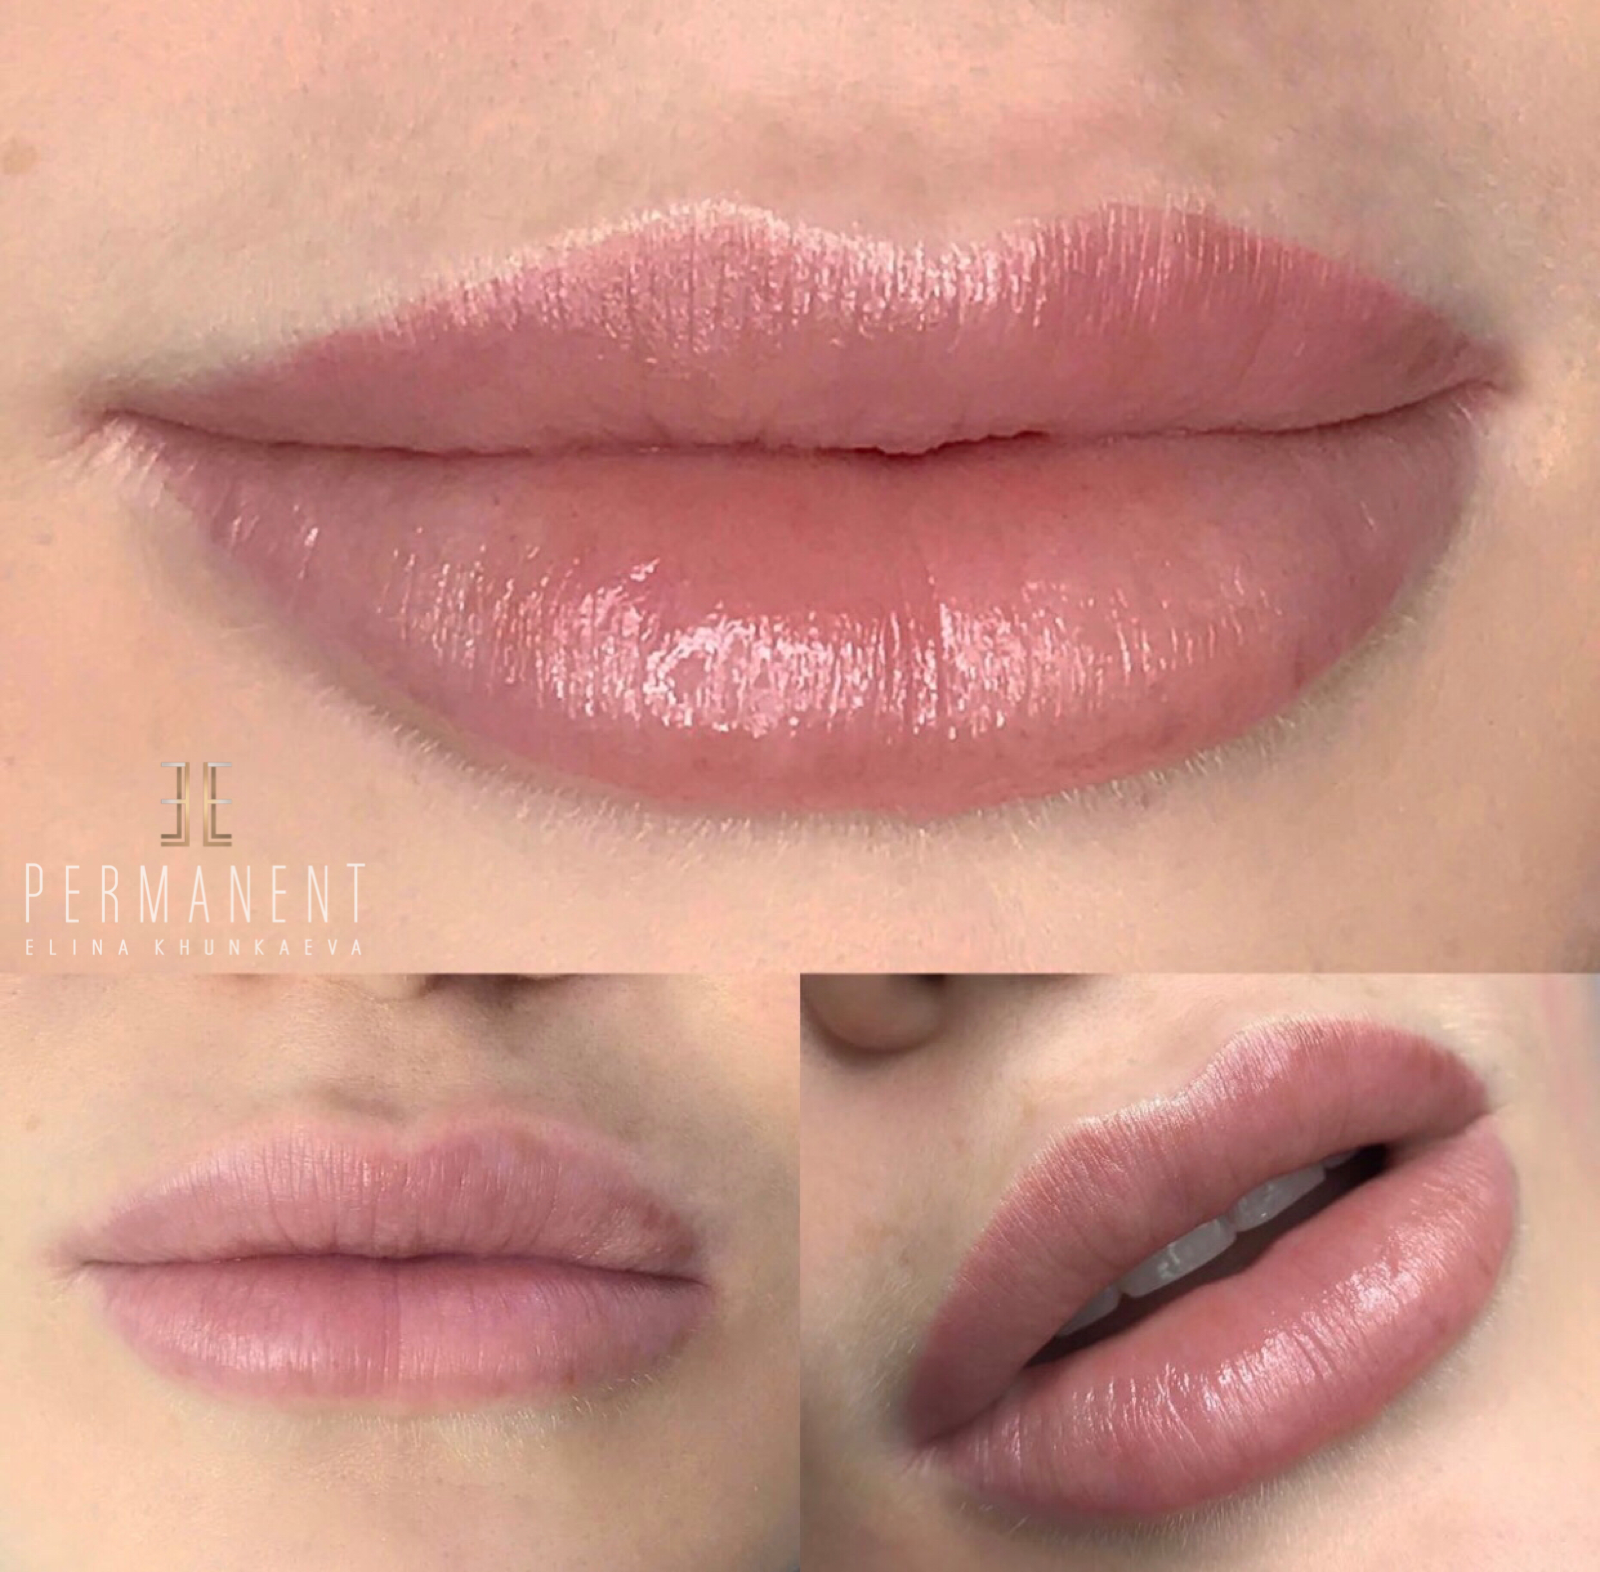 Акварельные губы до и после. Перманент губ. Татуаж губ. Перманентный макияж губ. Перманентный макияж губ Акварельная техника.